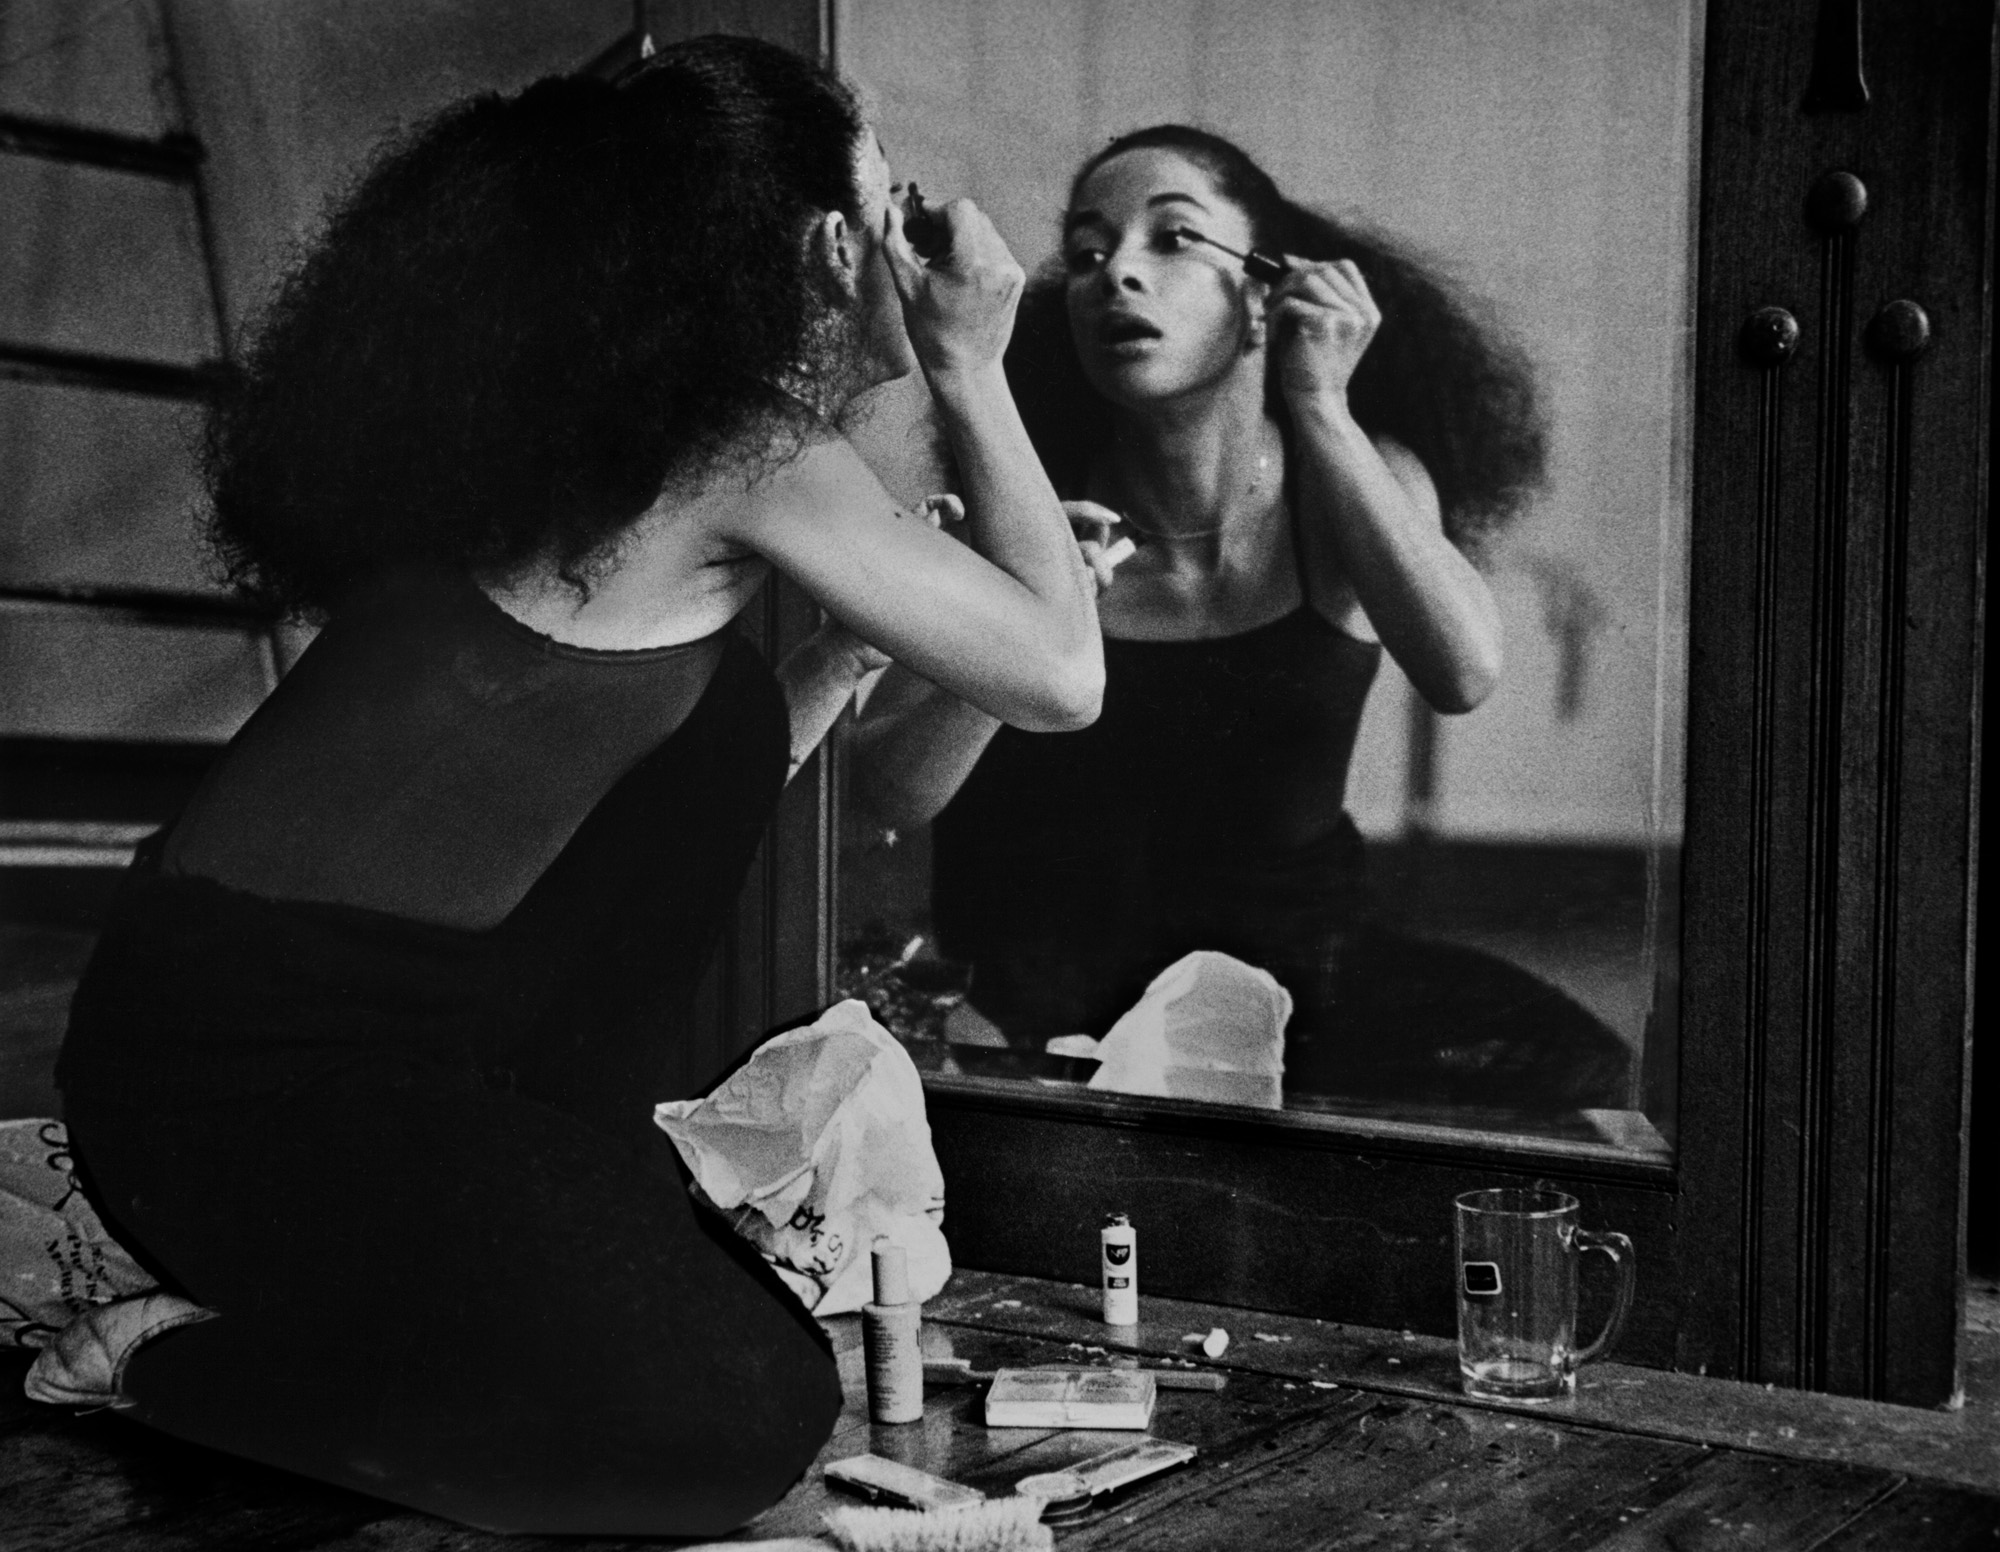 21. dancer preparing for a show, circa 1976-7